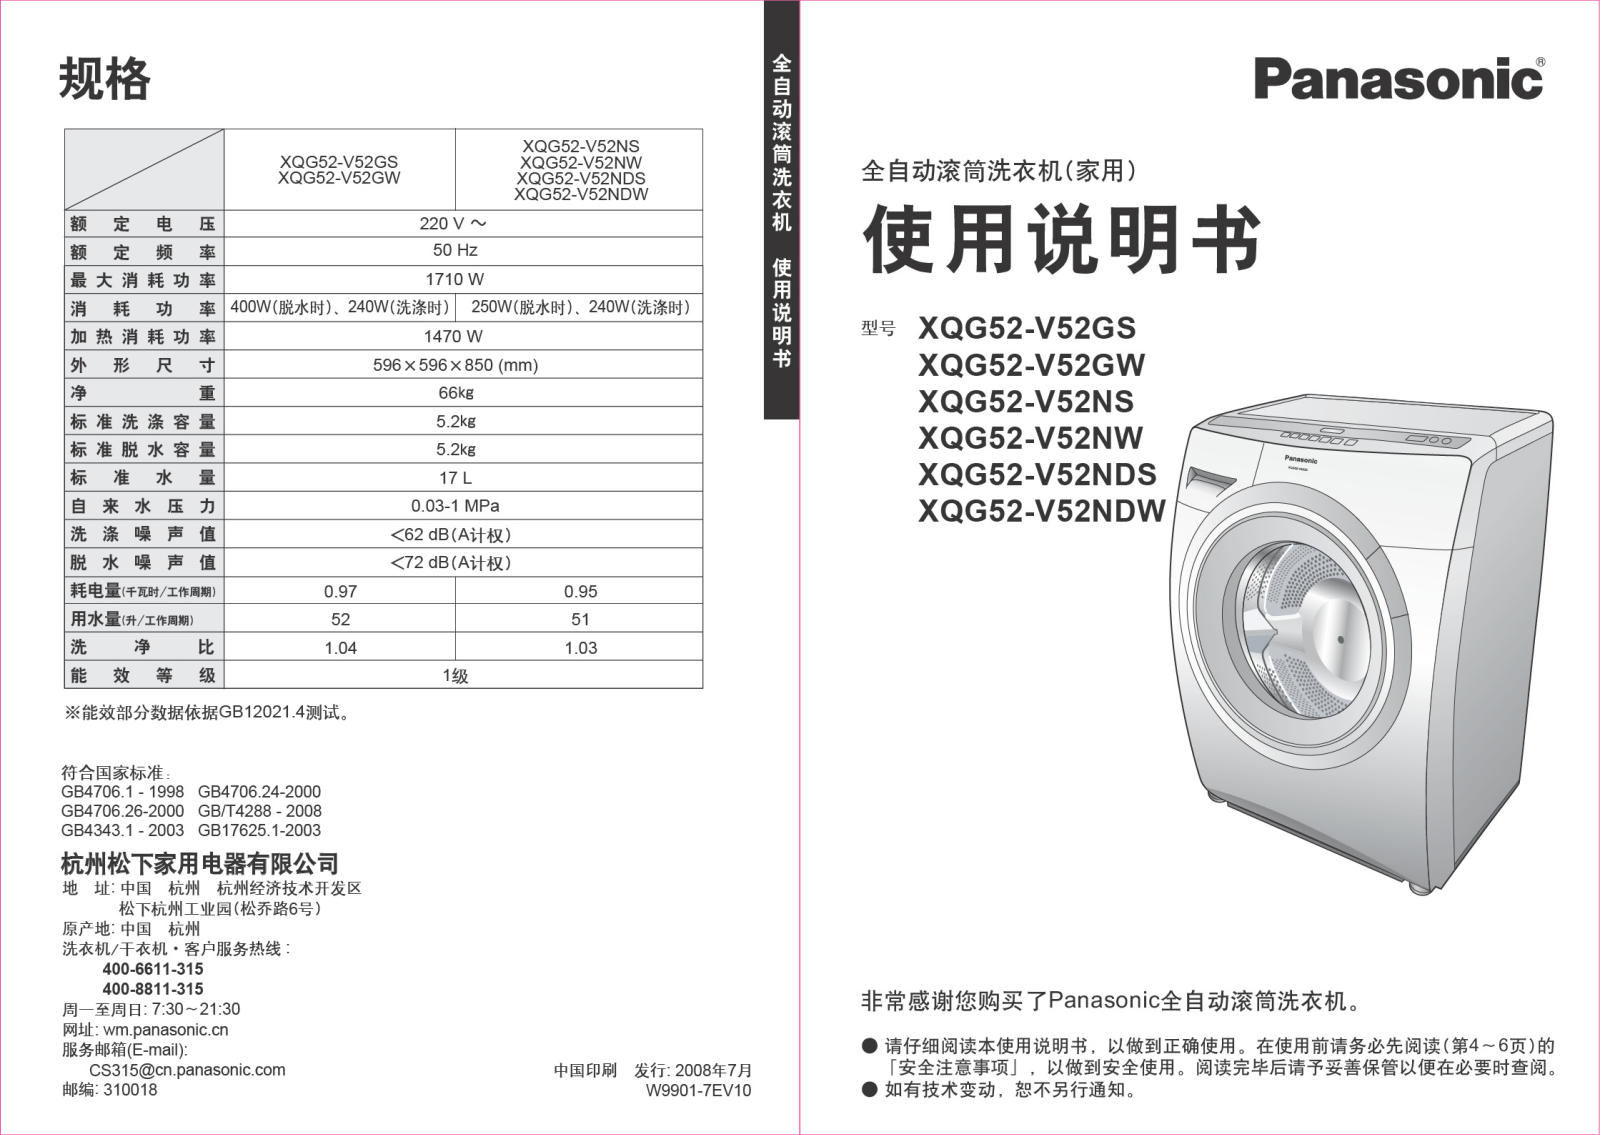 Panasonic XQG52-V52GS, XQG52-V52GW, XQG52-V52NS, XQG52-V52NW, XQG52-V5NDS User Manual